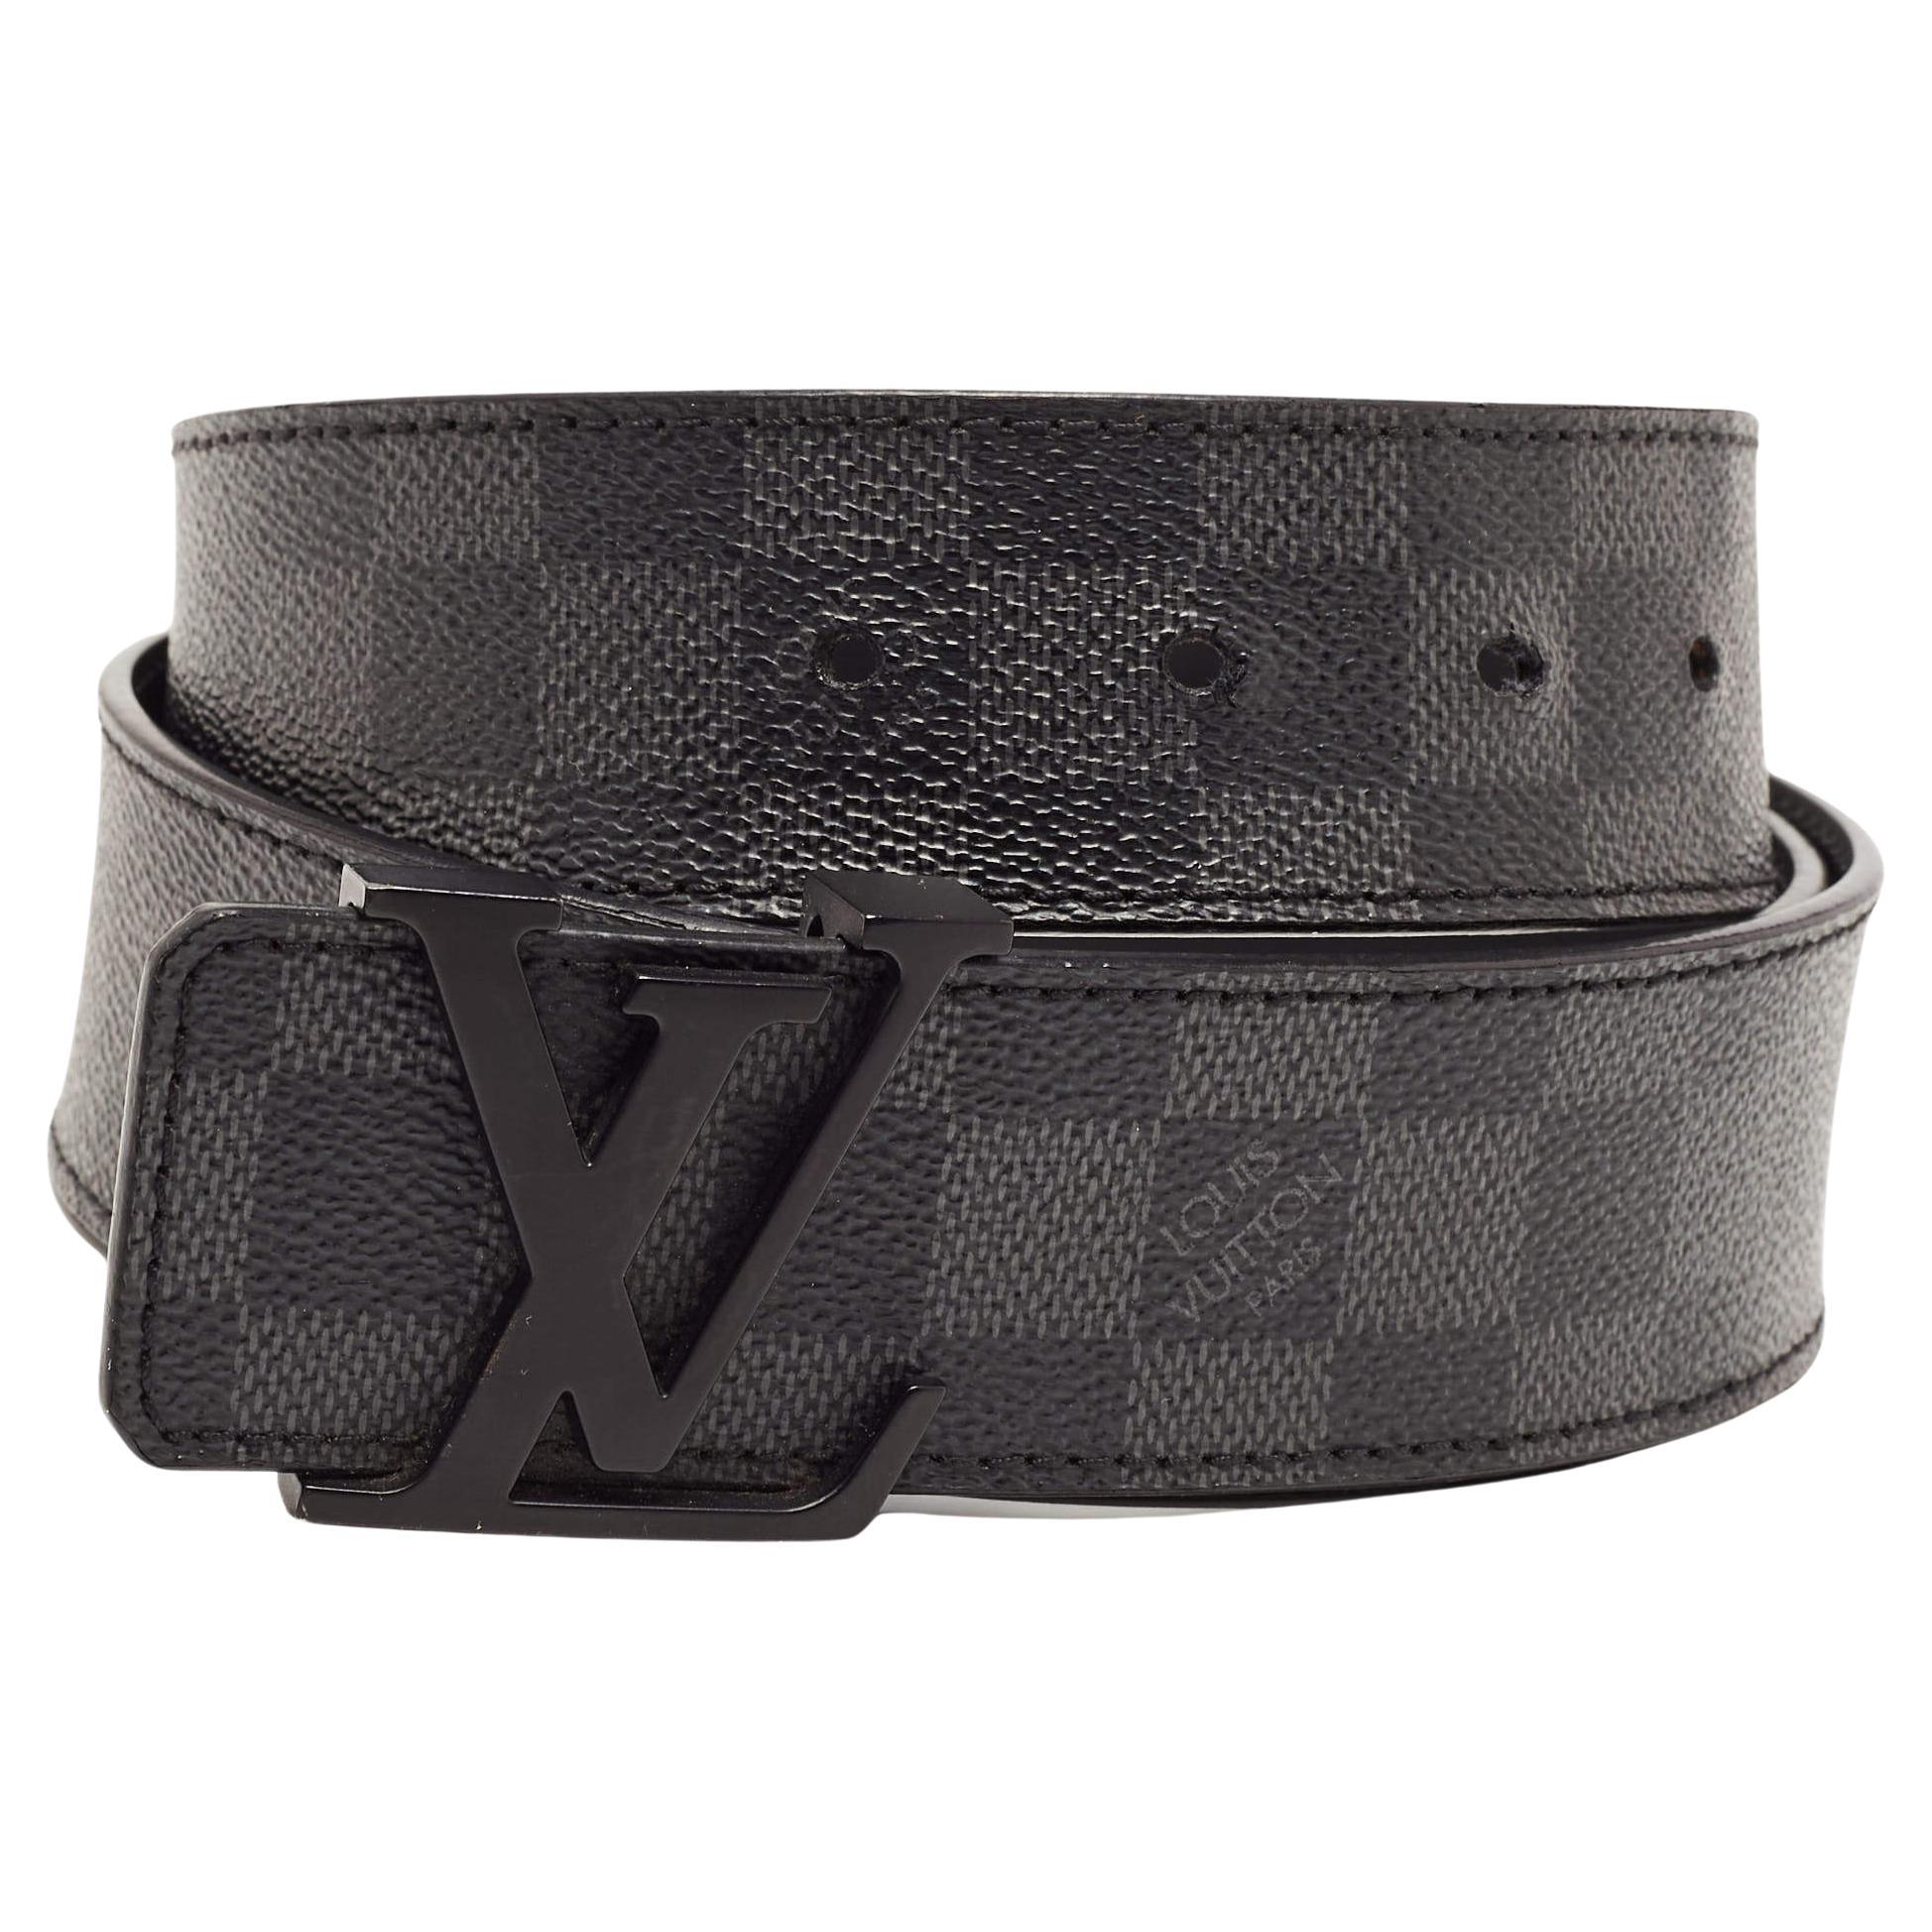 Louis Vuitton Damier Graphite Coated Canvas Initials Belt 95 CM